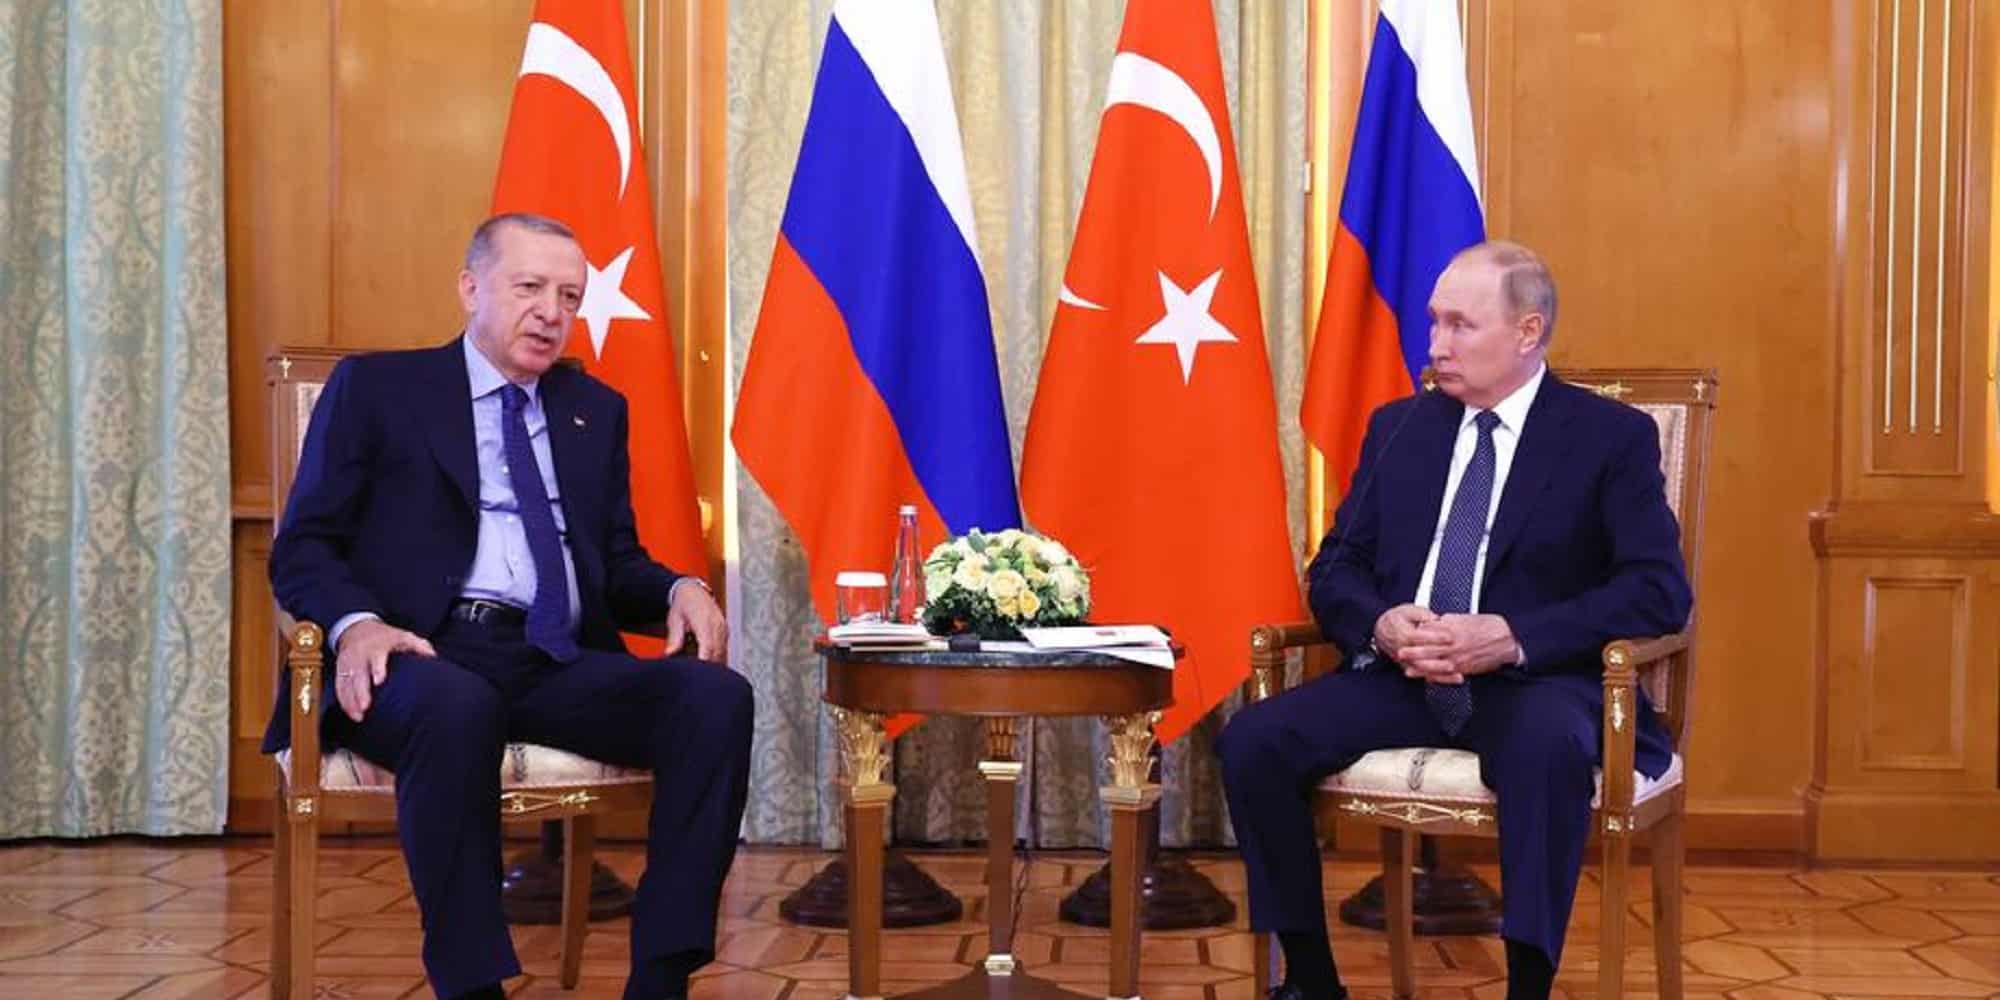 Ο Βλαντιμίρ Πούτιν σε συνάντηση με τον Ρετζέπ Ταγίπ Ερντογάν